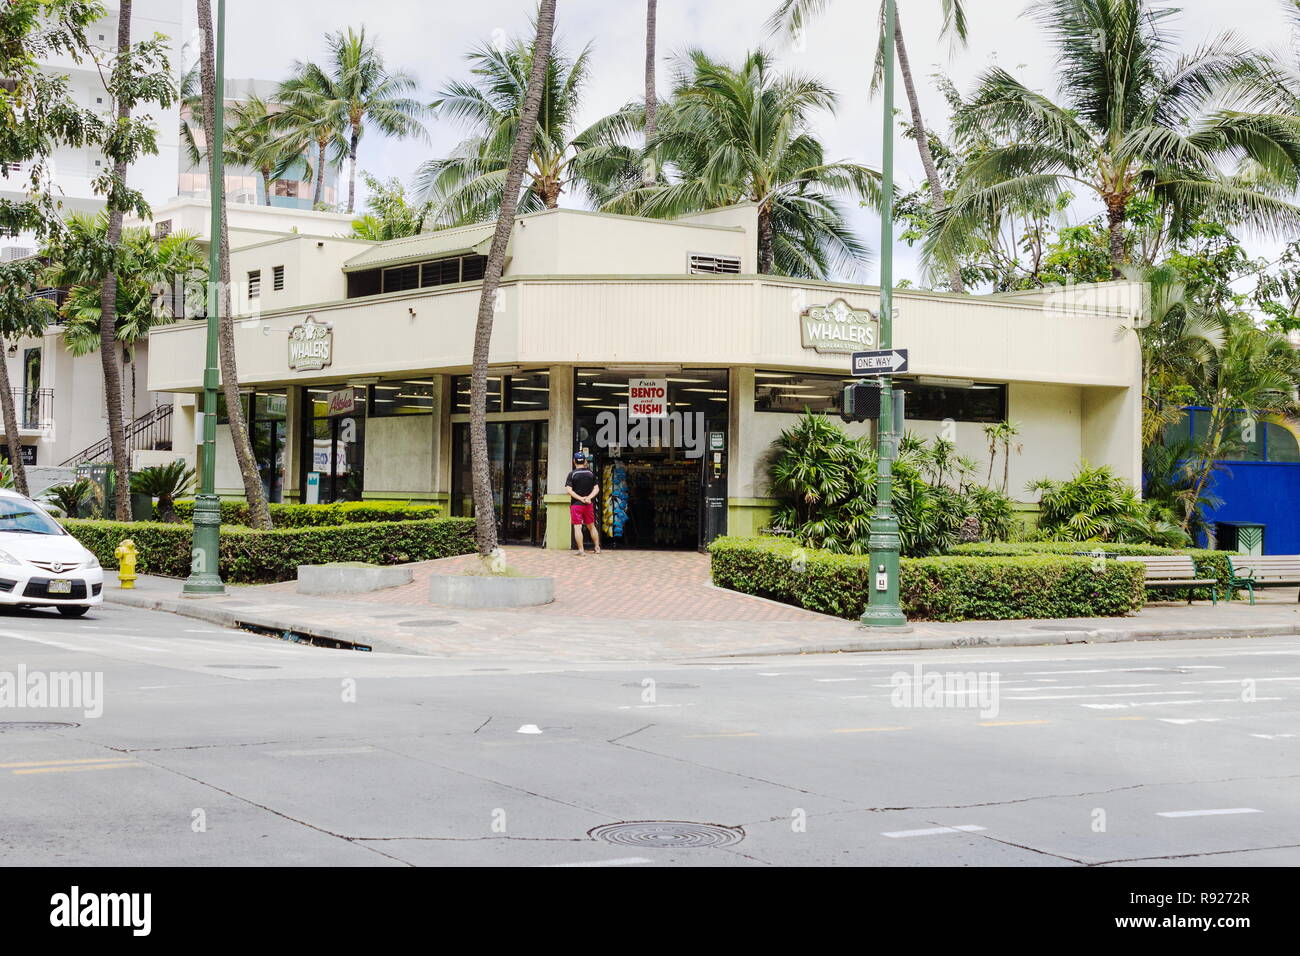 Waikiki, Hawaii - 25. Mai 2016: Außenansicht eines Walfänger General Store, ein One-stop-shop für hawaiische Souvenirs, Snacks, Sonnencreme, und alles Els Stockfoto